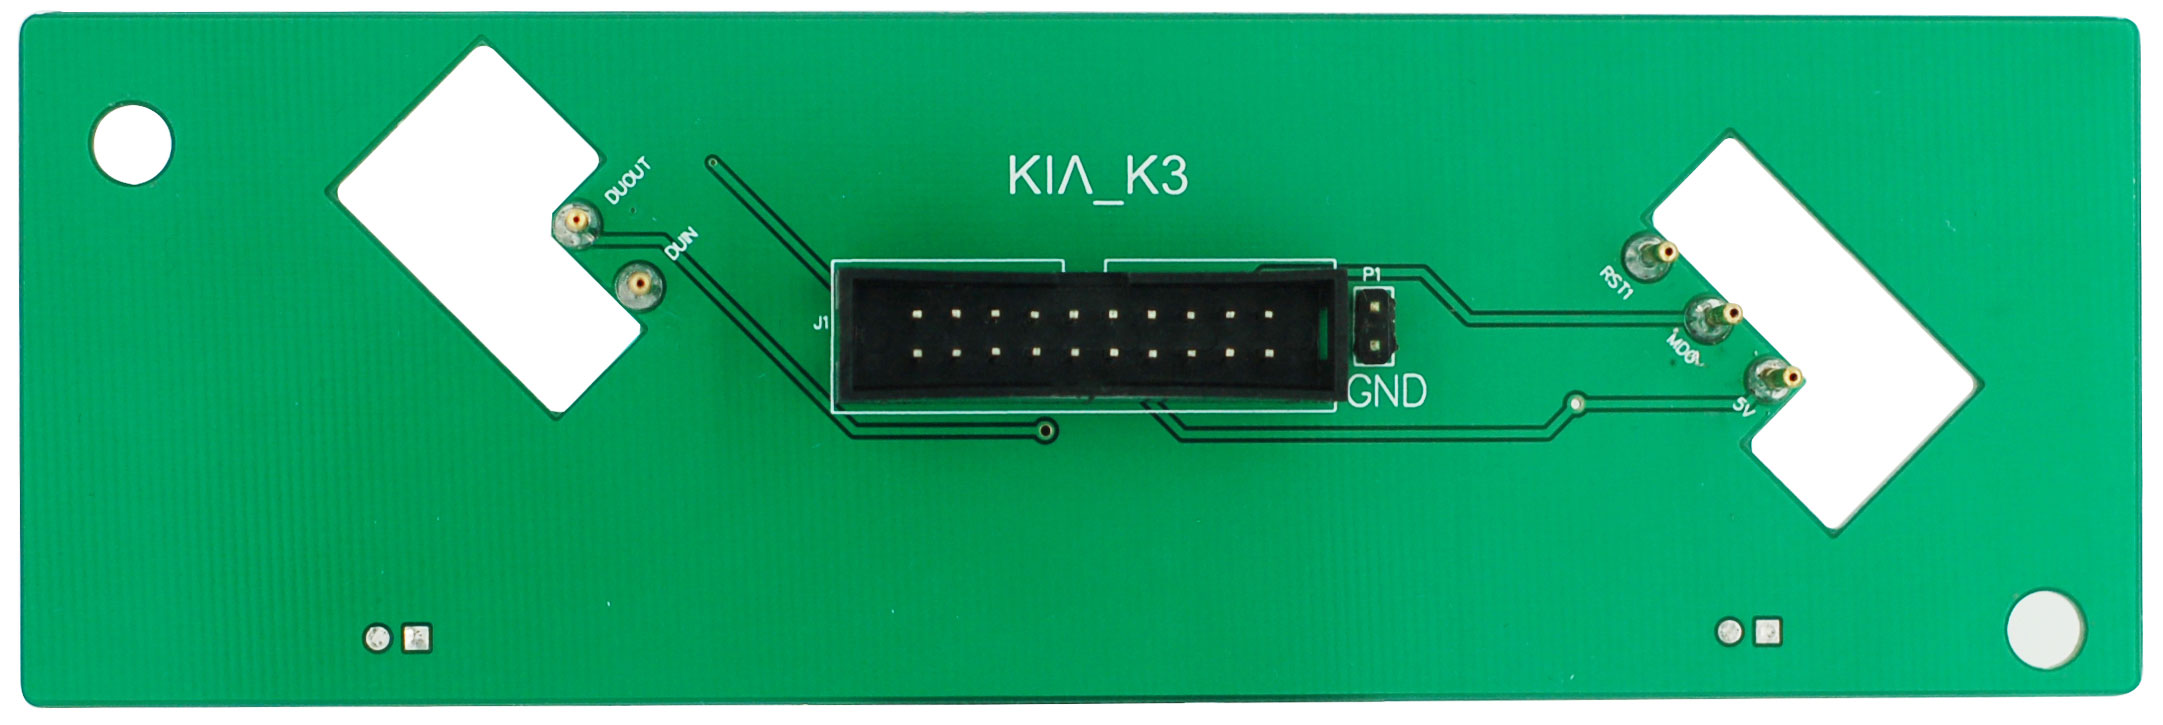 KIA-K3-Interface 